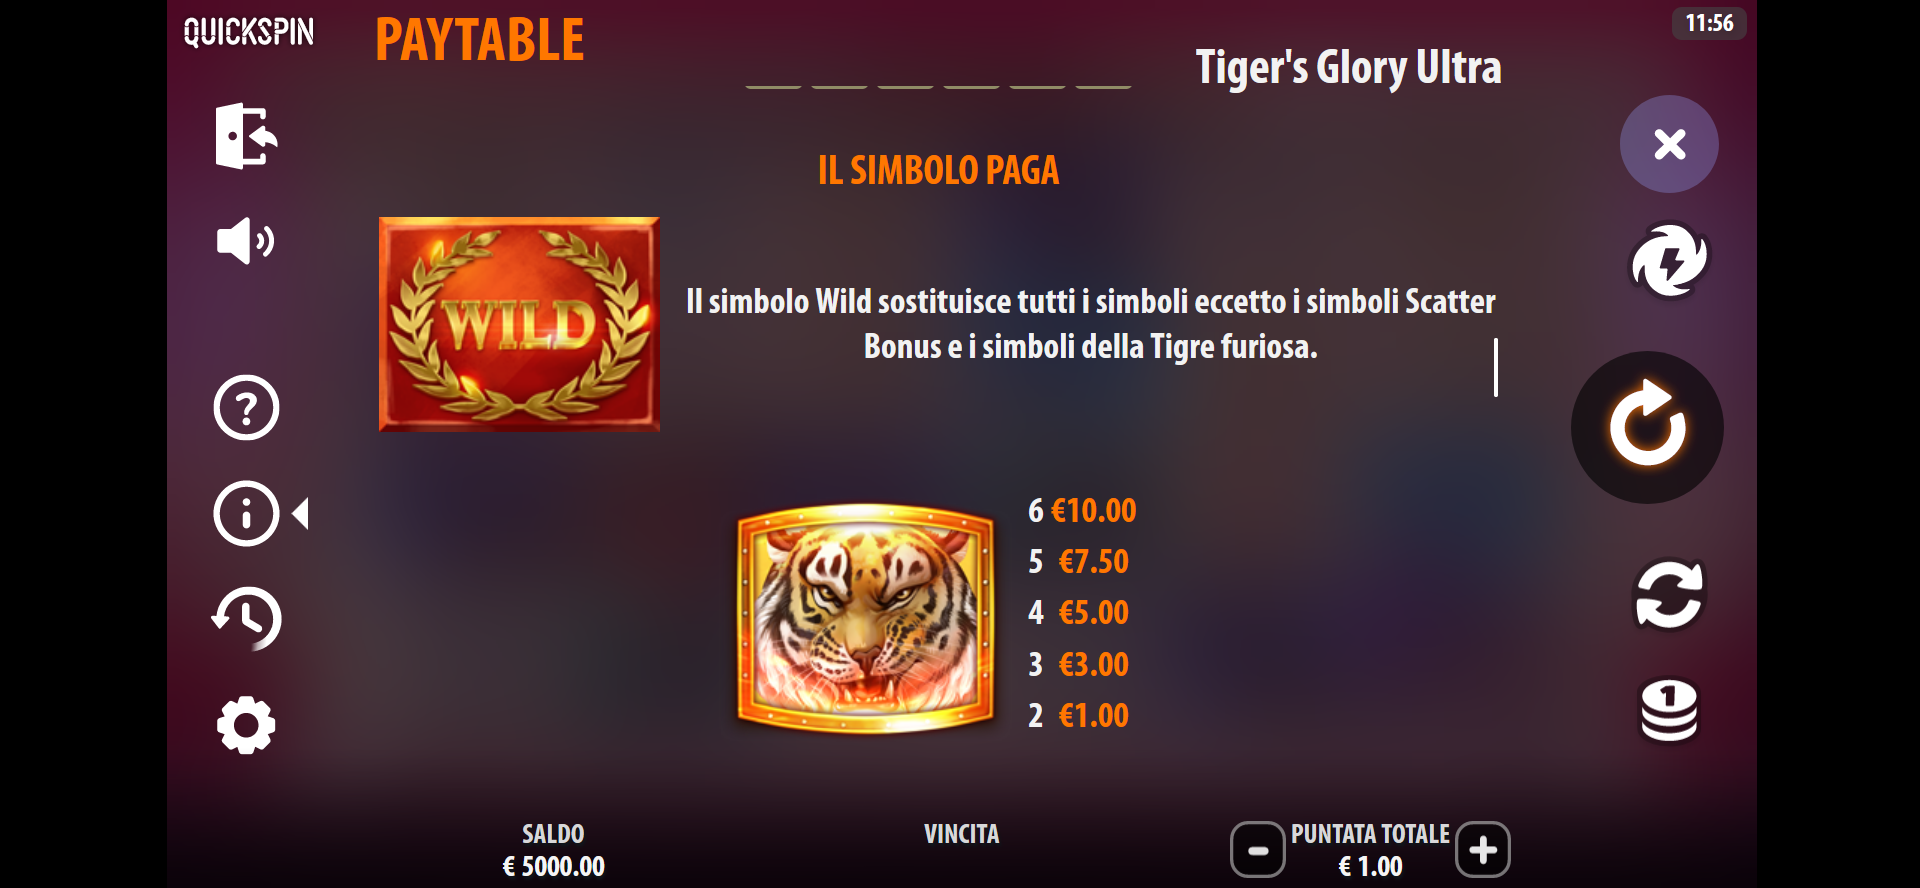 tabella dei pagamenti della slot machine tiger's glory ultra